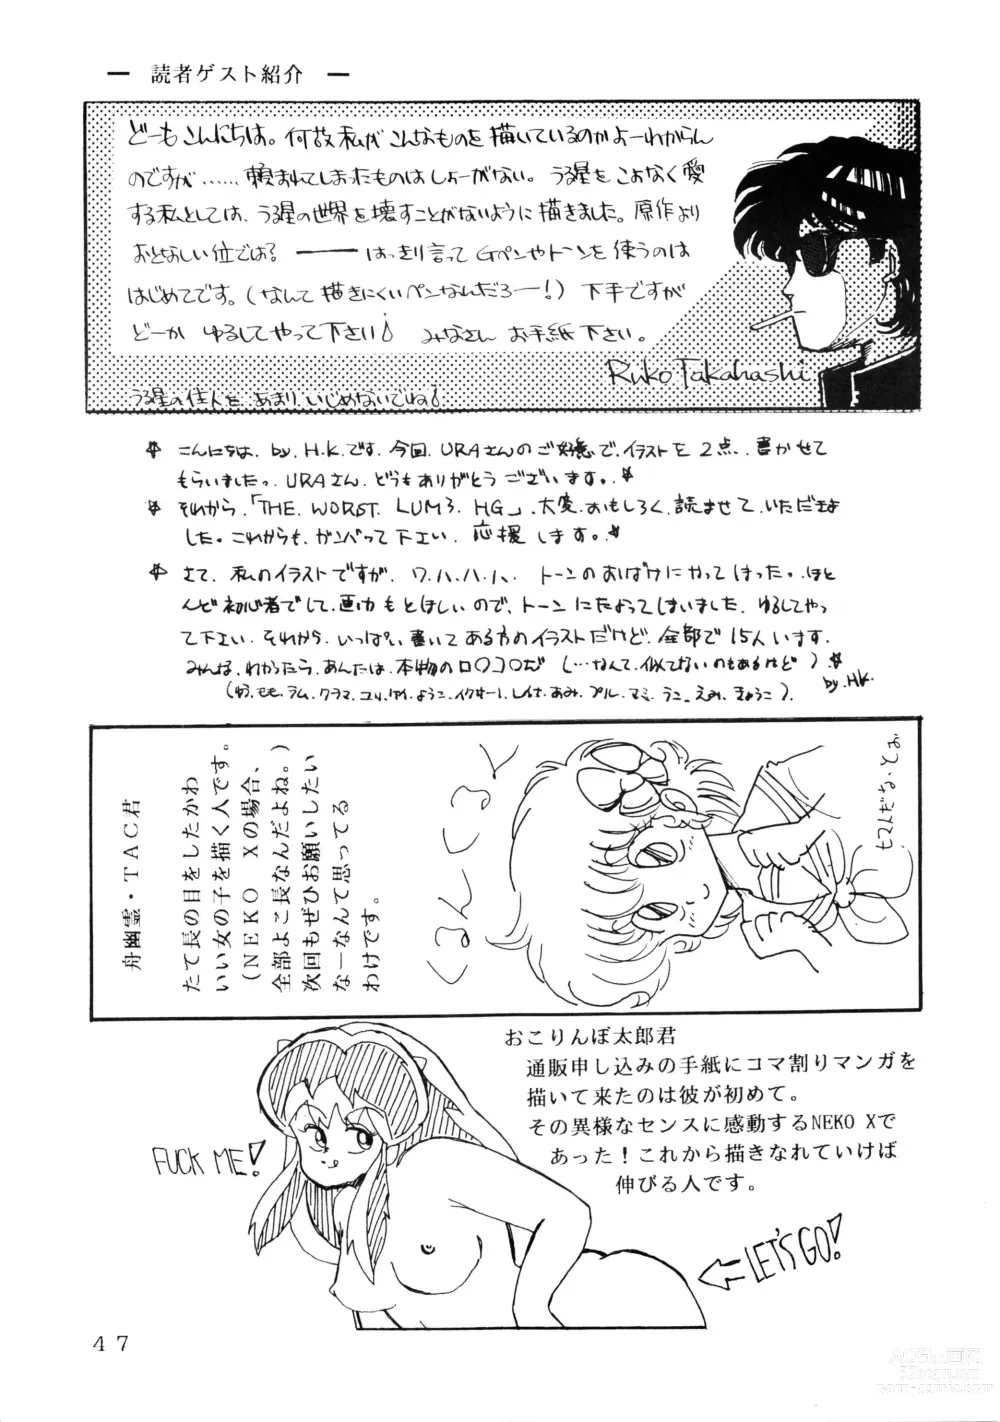 Page 47 of doujinshi 사상 최악의 LUM 4